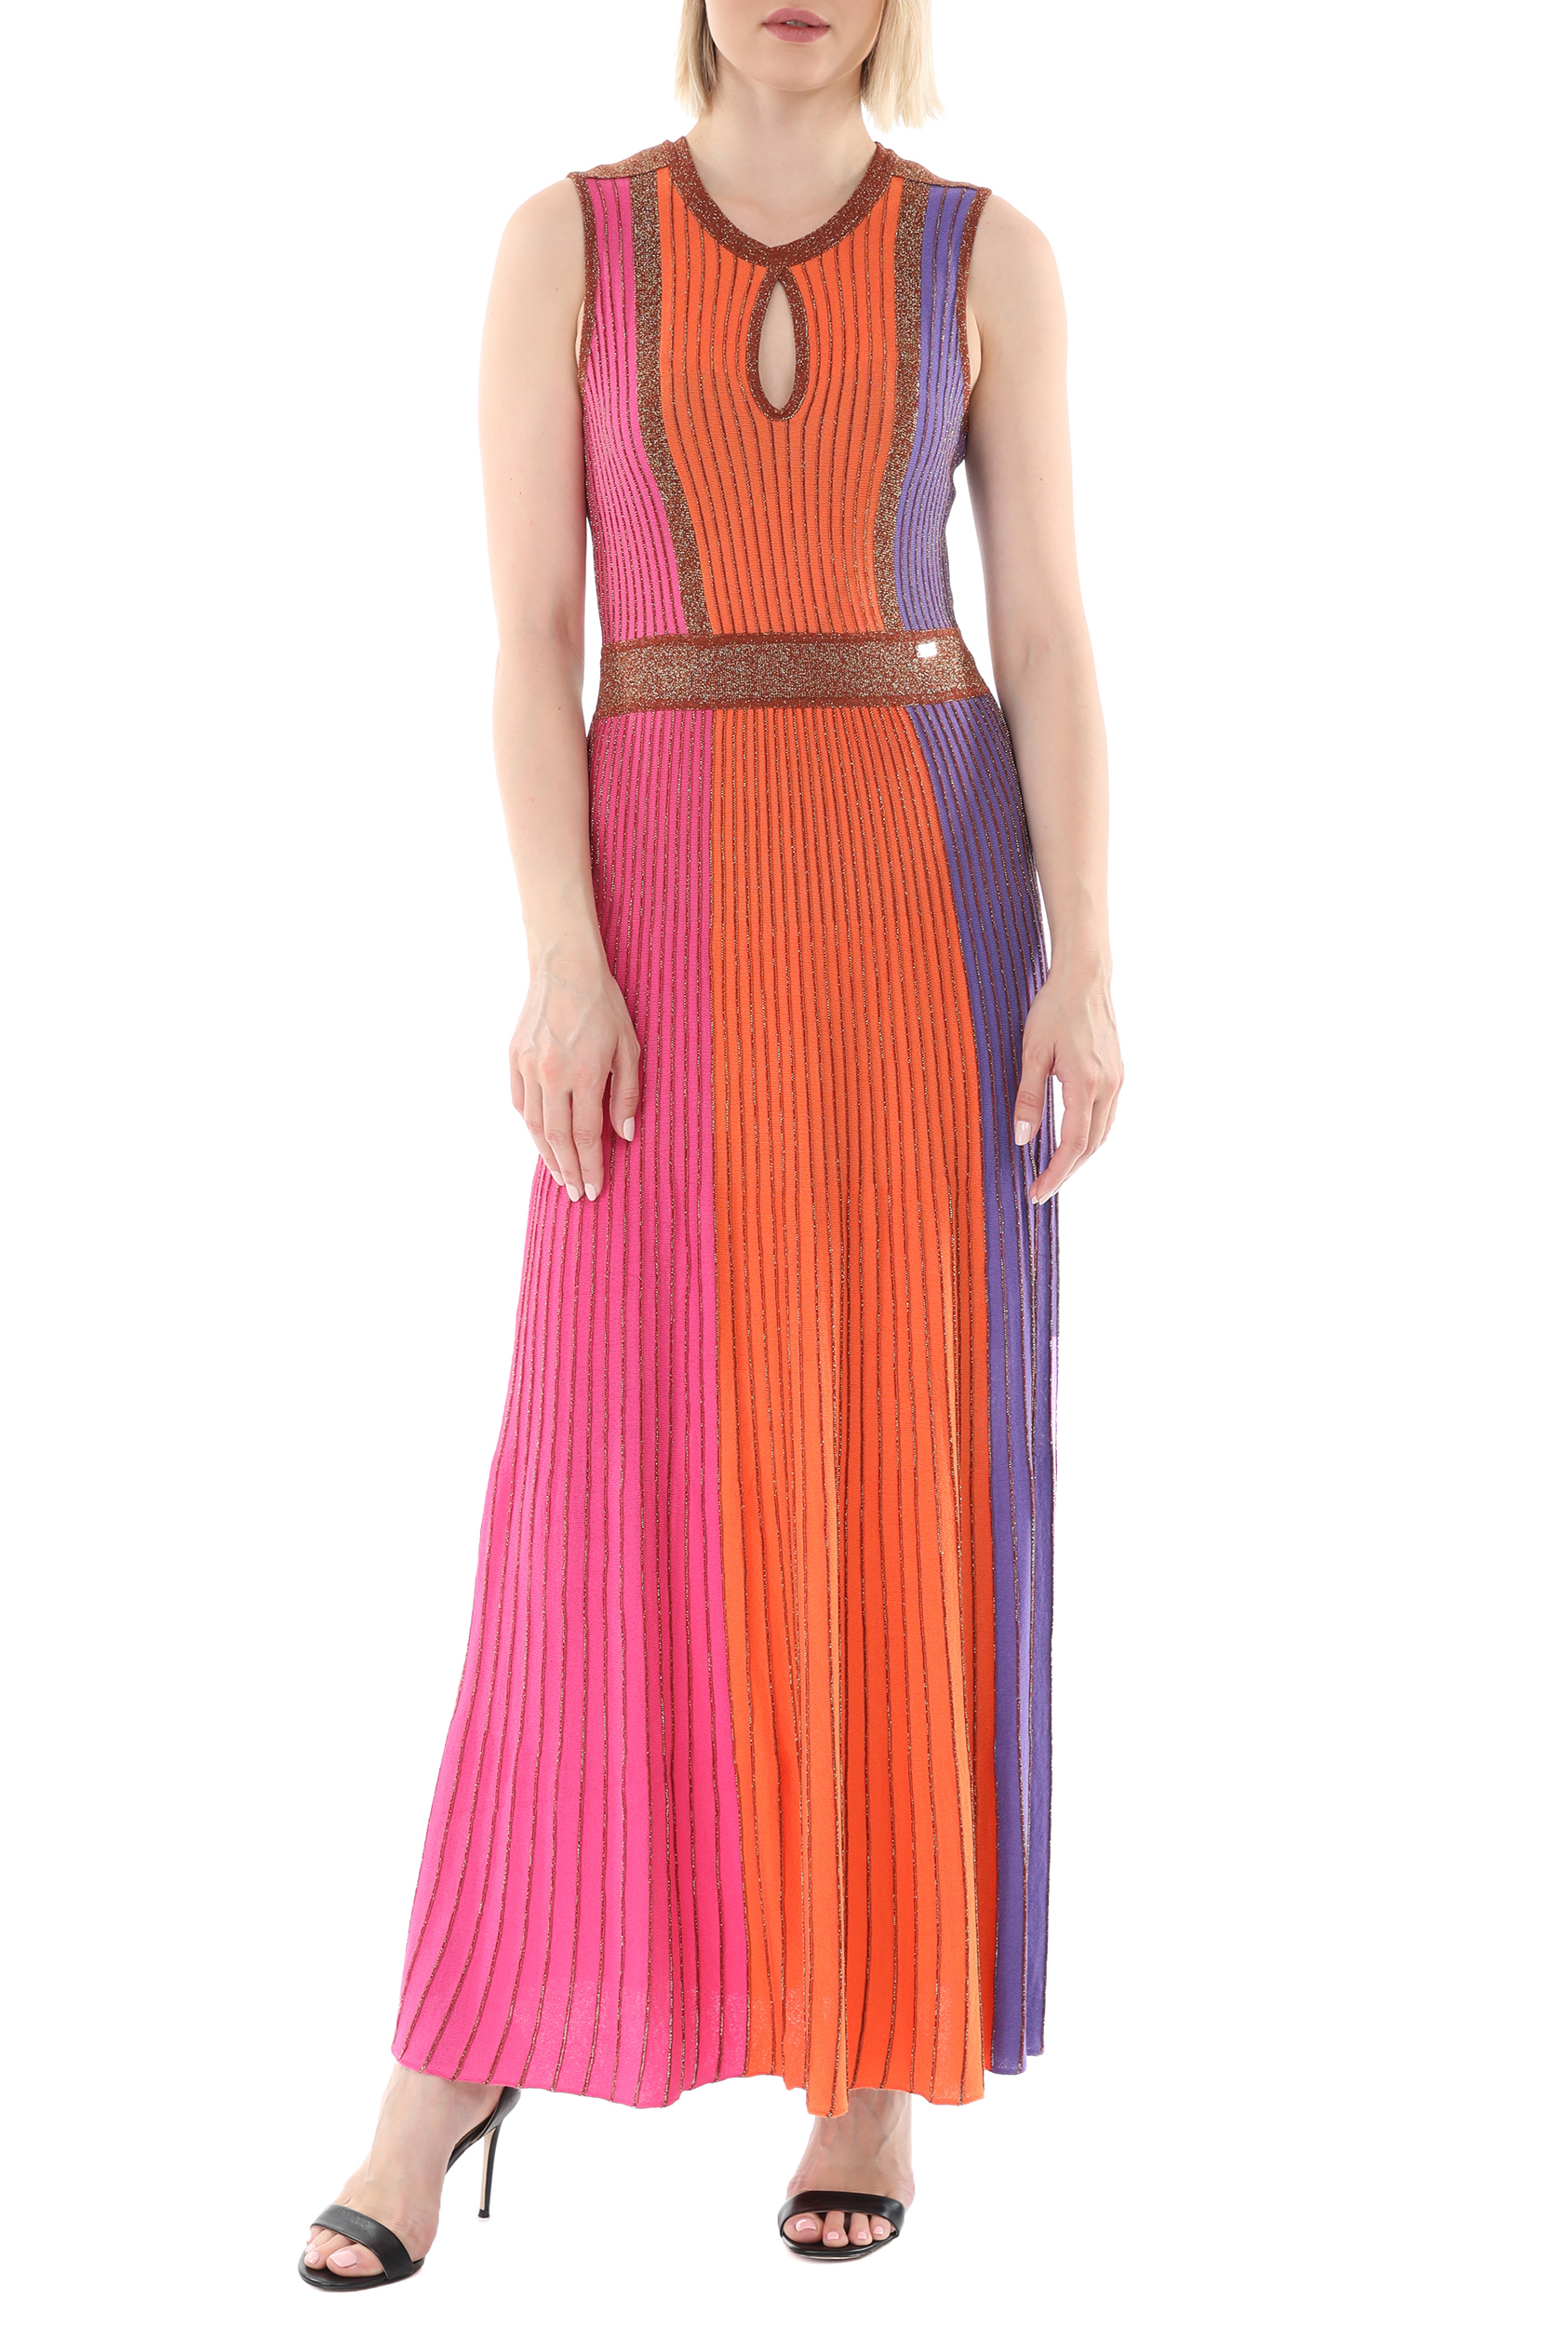 Γυναικεία/Ρούχα/Φορέματα/Μάξι NENETTE - Γυναικείο maxi φόρεμα NENETTE TIARA MAGLIA PLISSE φούξια πορτοκαλί μπλε